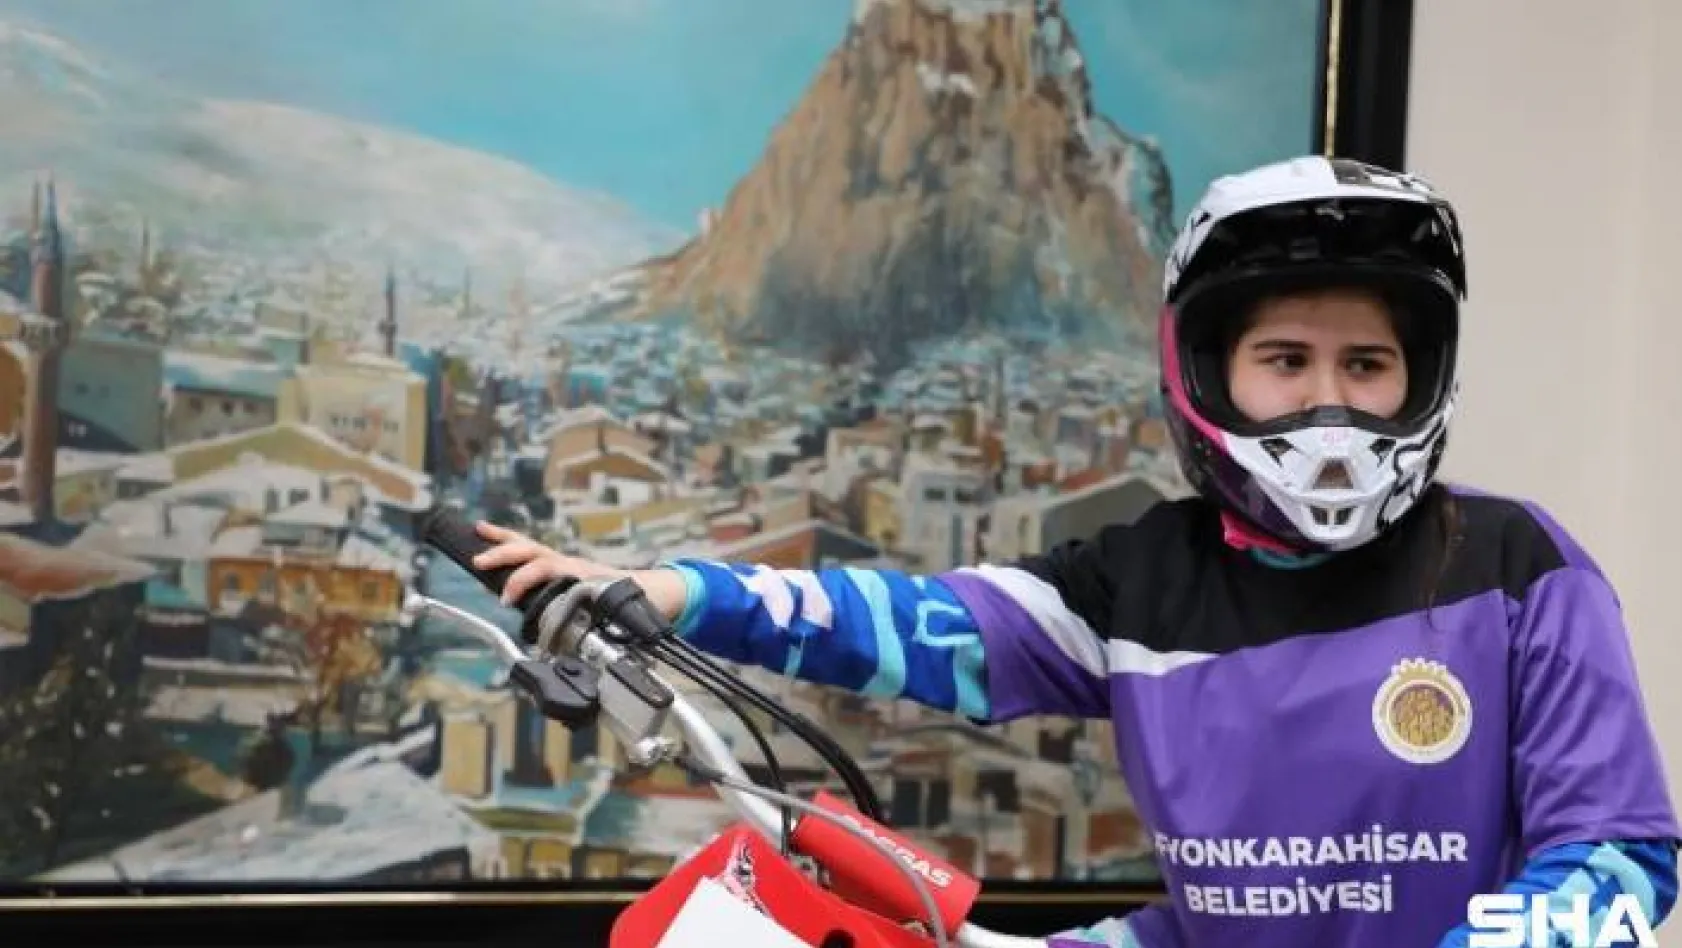 Dünya Motokros Şampiyonası'nda Türkiye'yi temsil edecek ilk kadın sporcu Irmak Yıldırım, Afyon'da kampa girdi